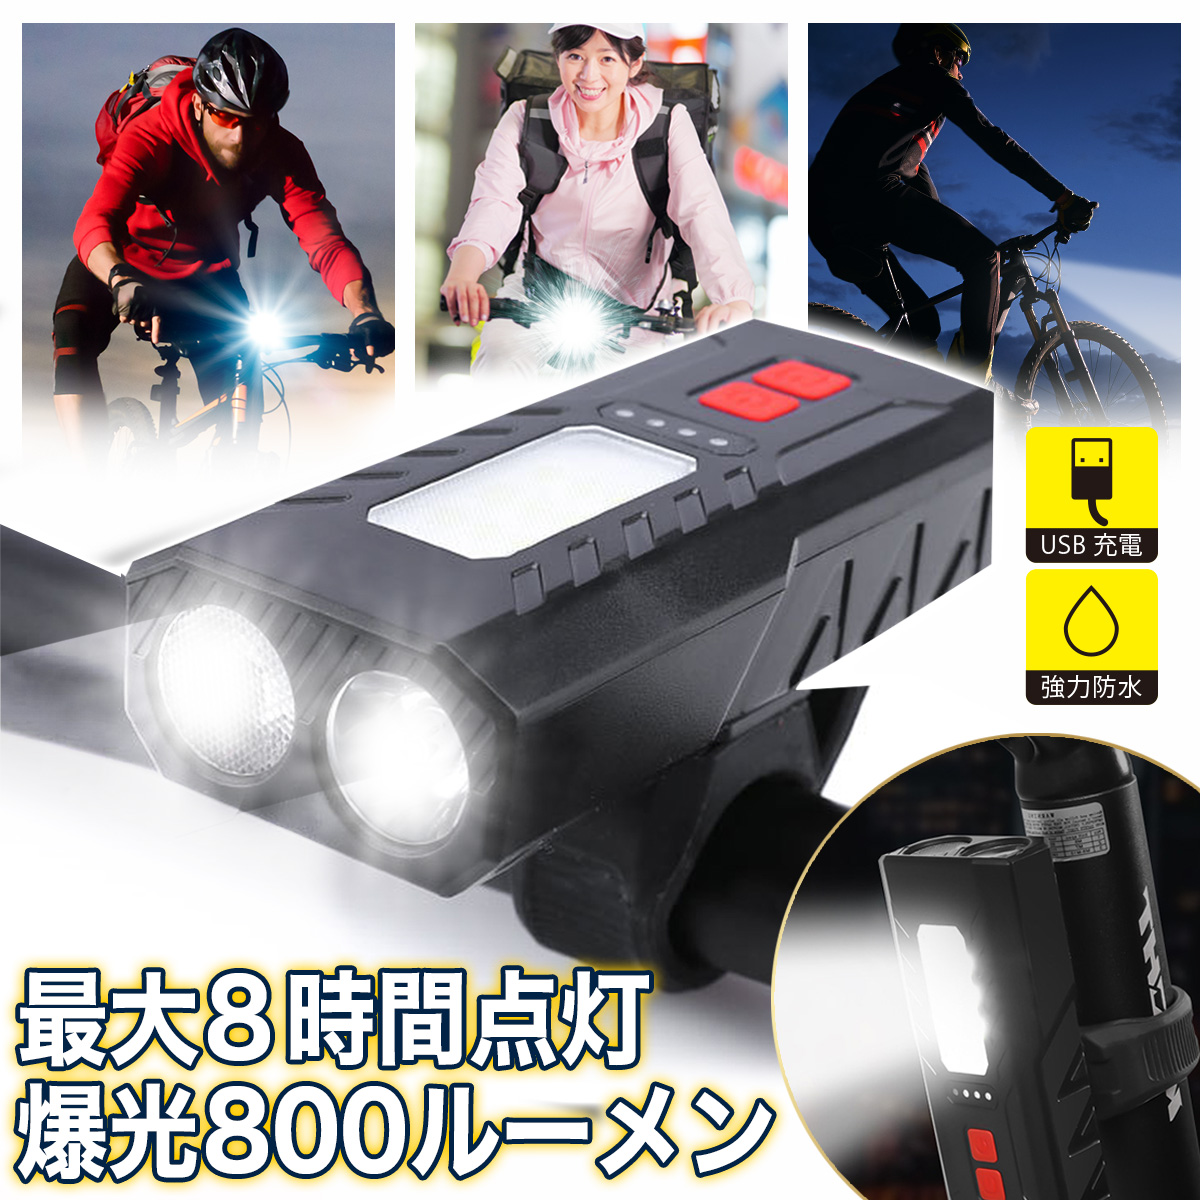 USB充電式の自転車用LEDフロントライト